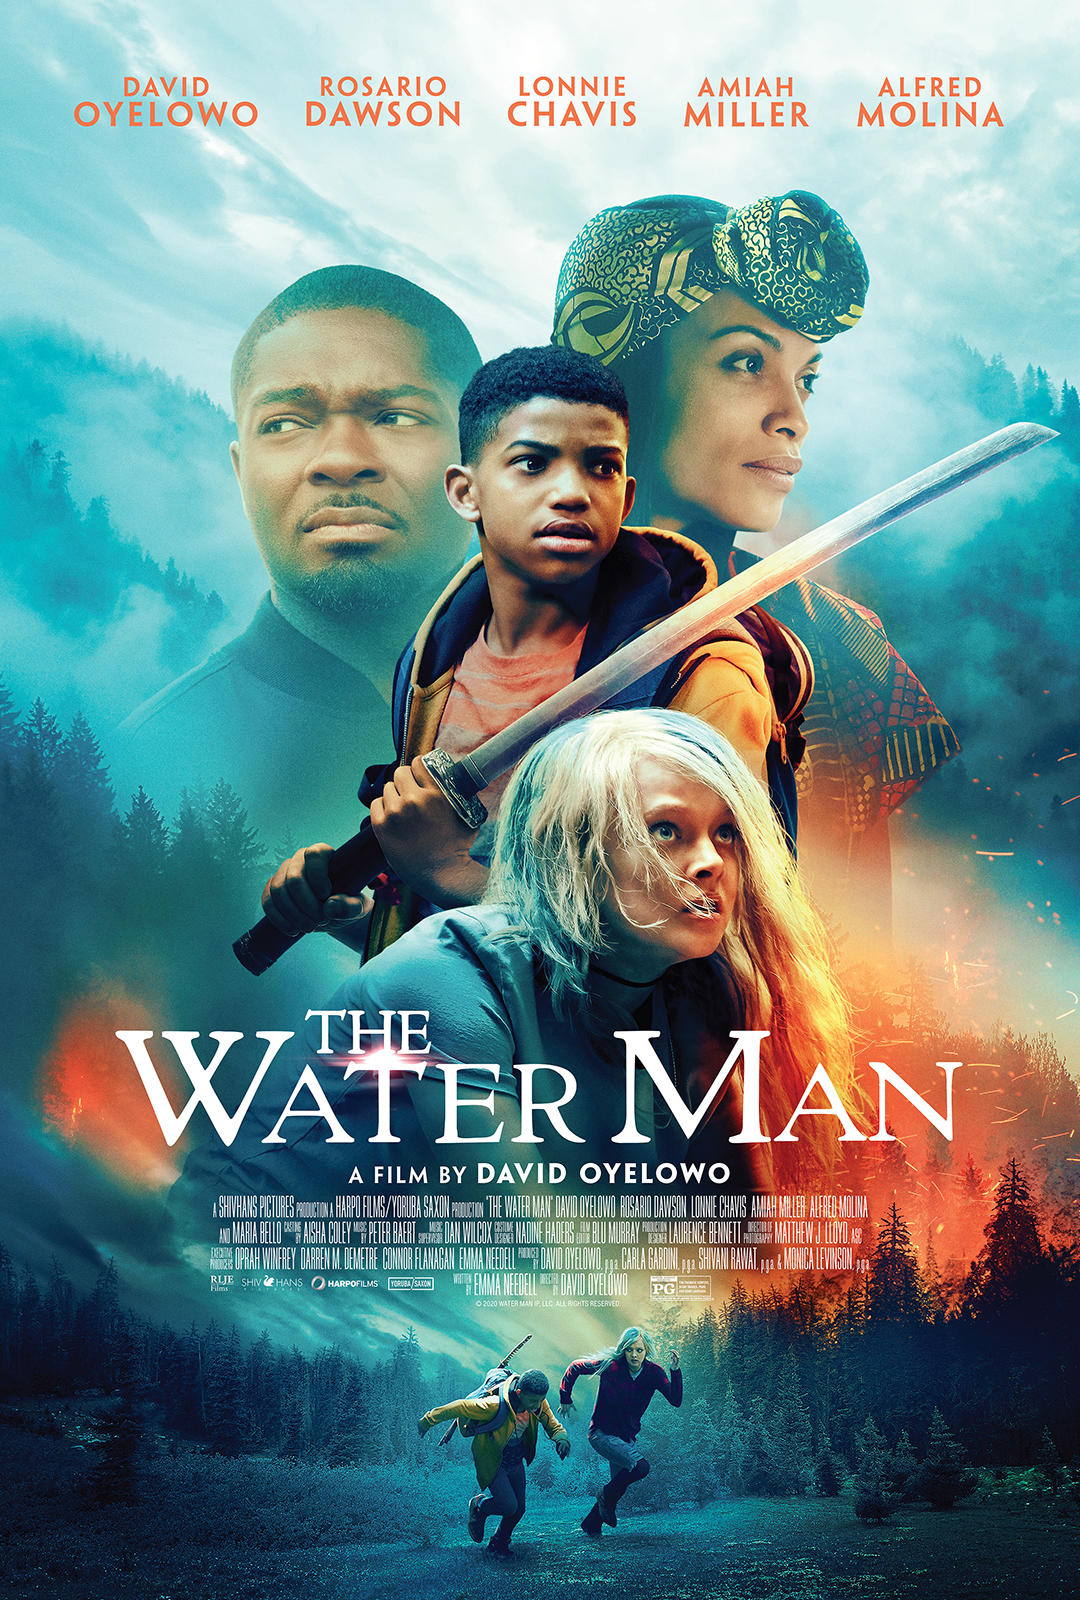 New Movie: ‘The Water Man’ Starring David Oyelowo, Rosario Dawson